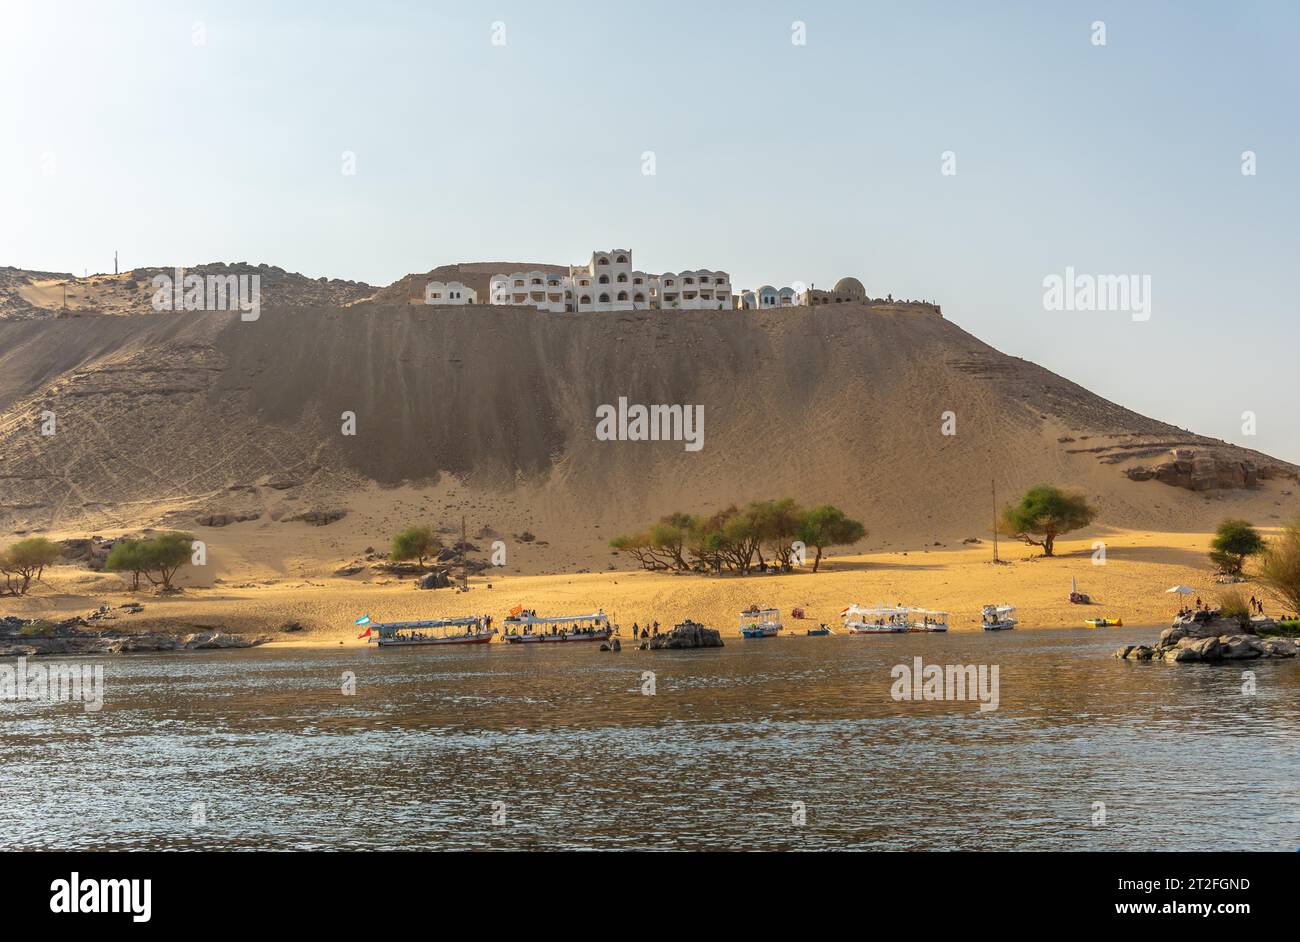 Ein nubisches Dorf auf einem Wüstensandberg am Nil und in der Nähe der Stadt Assuan. Ägypten Stockfoto